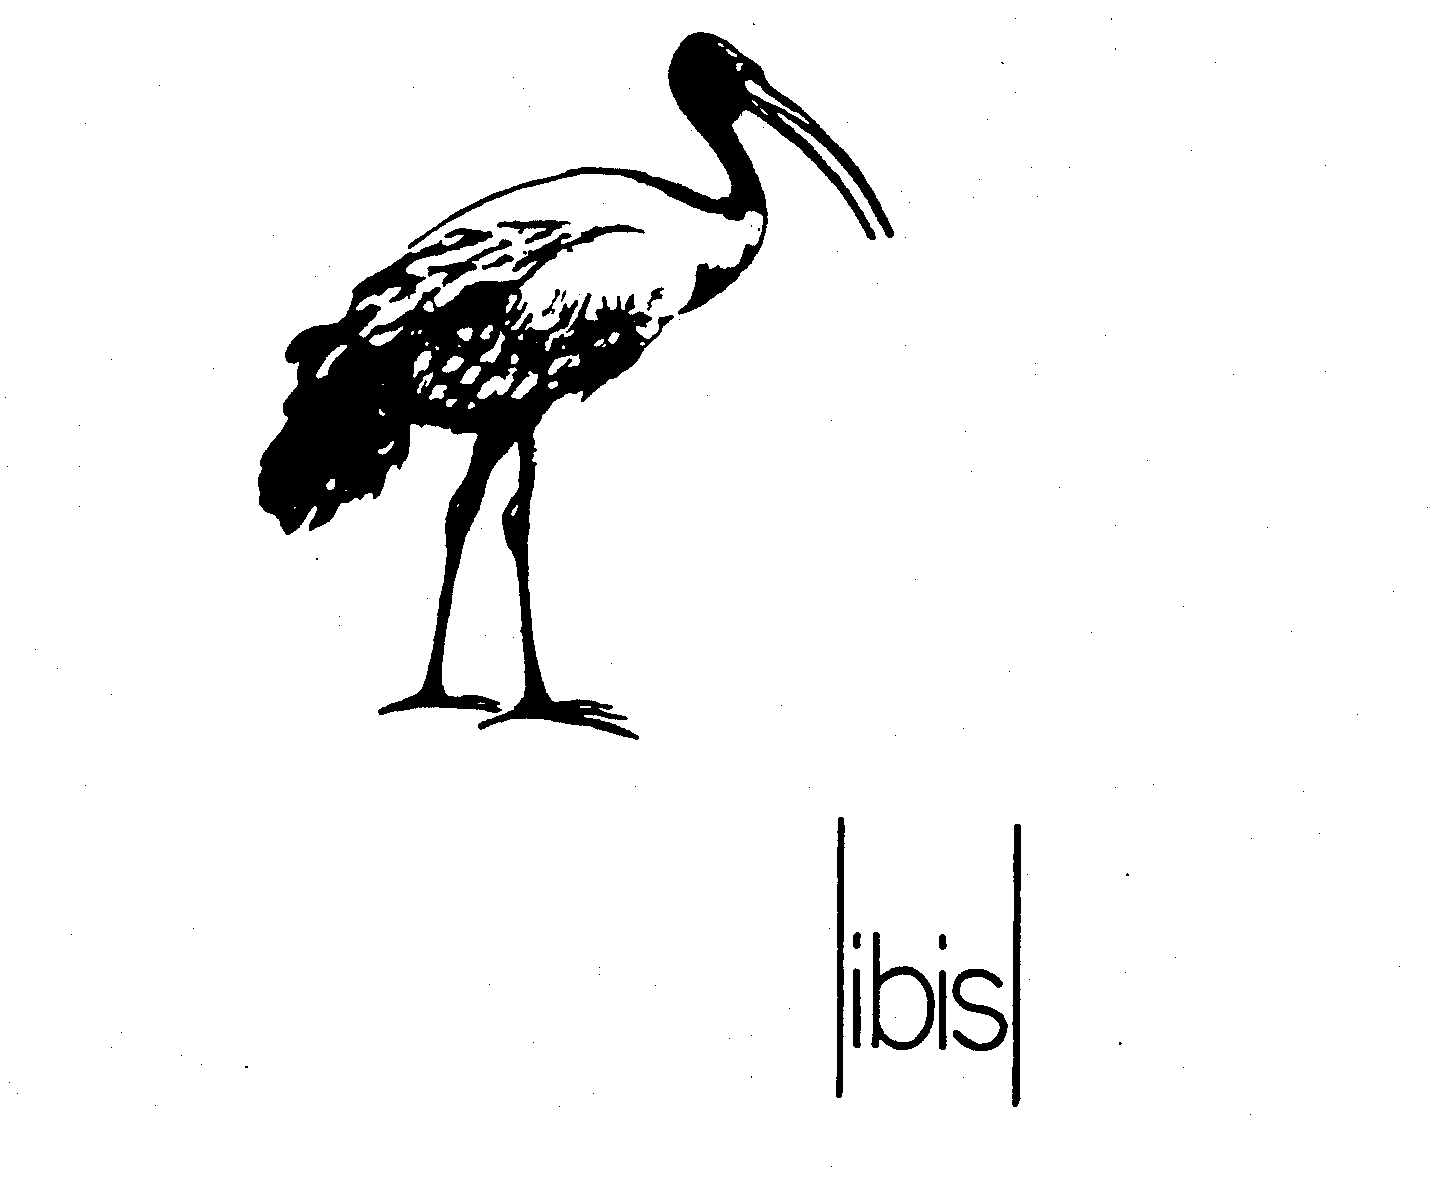 Trademark Logo IBIS